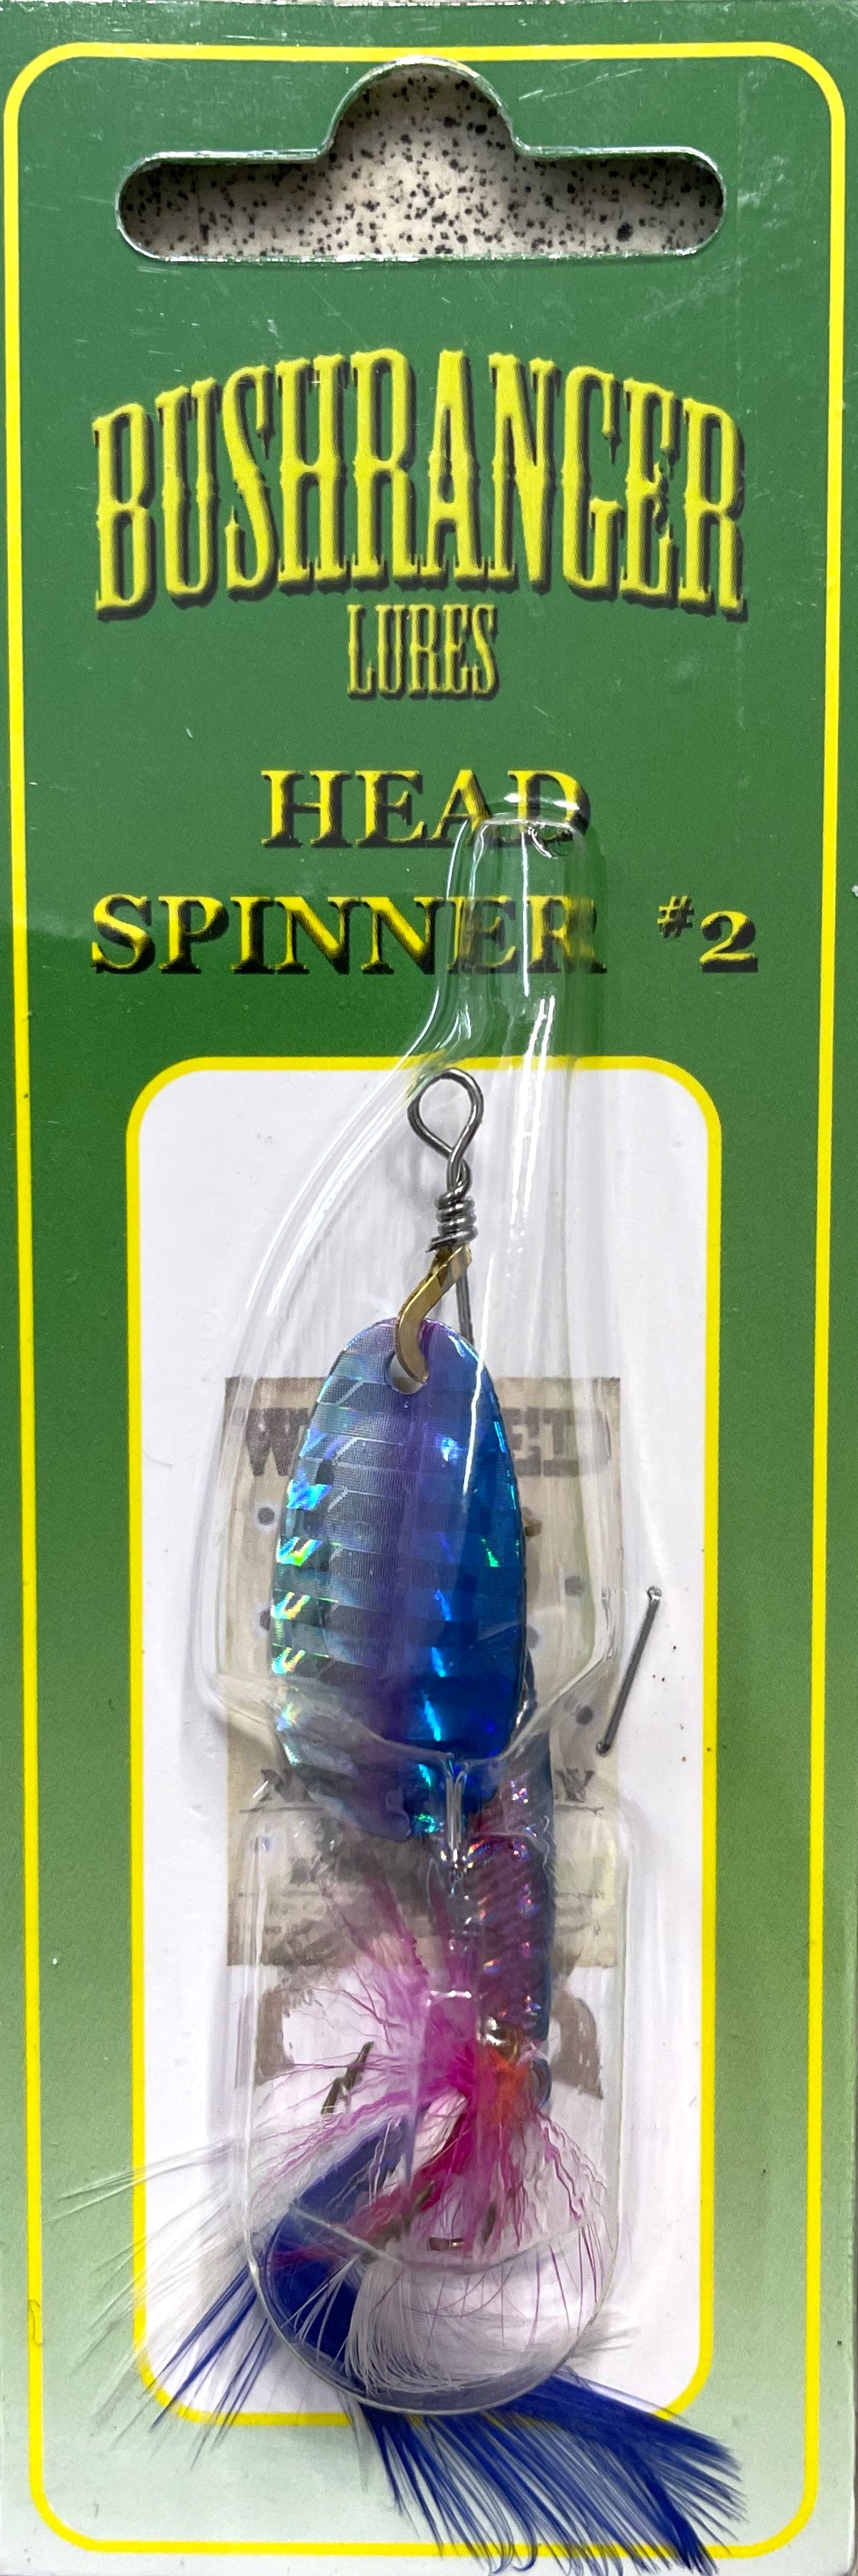 Bushranger Head Spinner Size #2 - 017